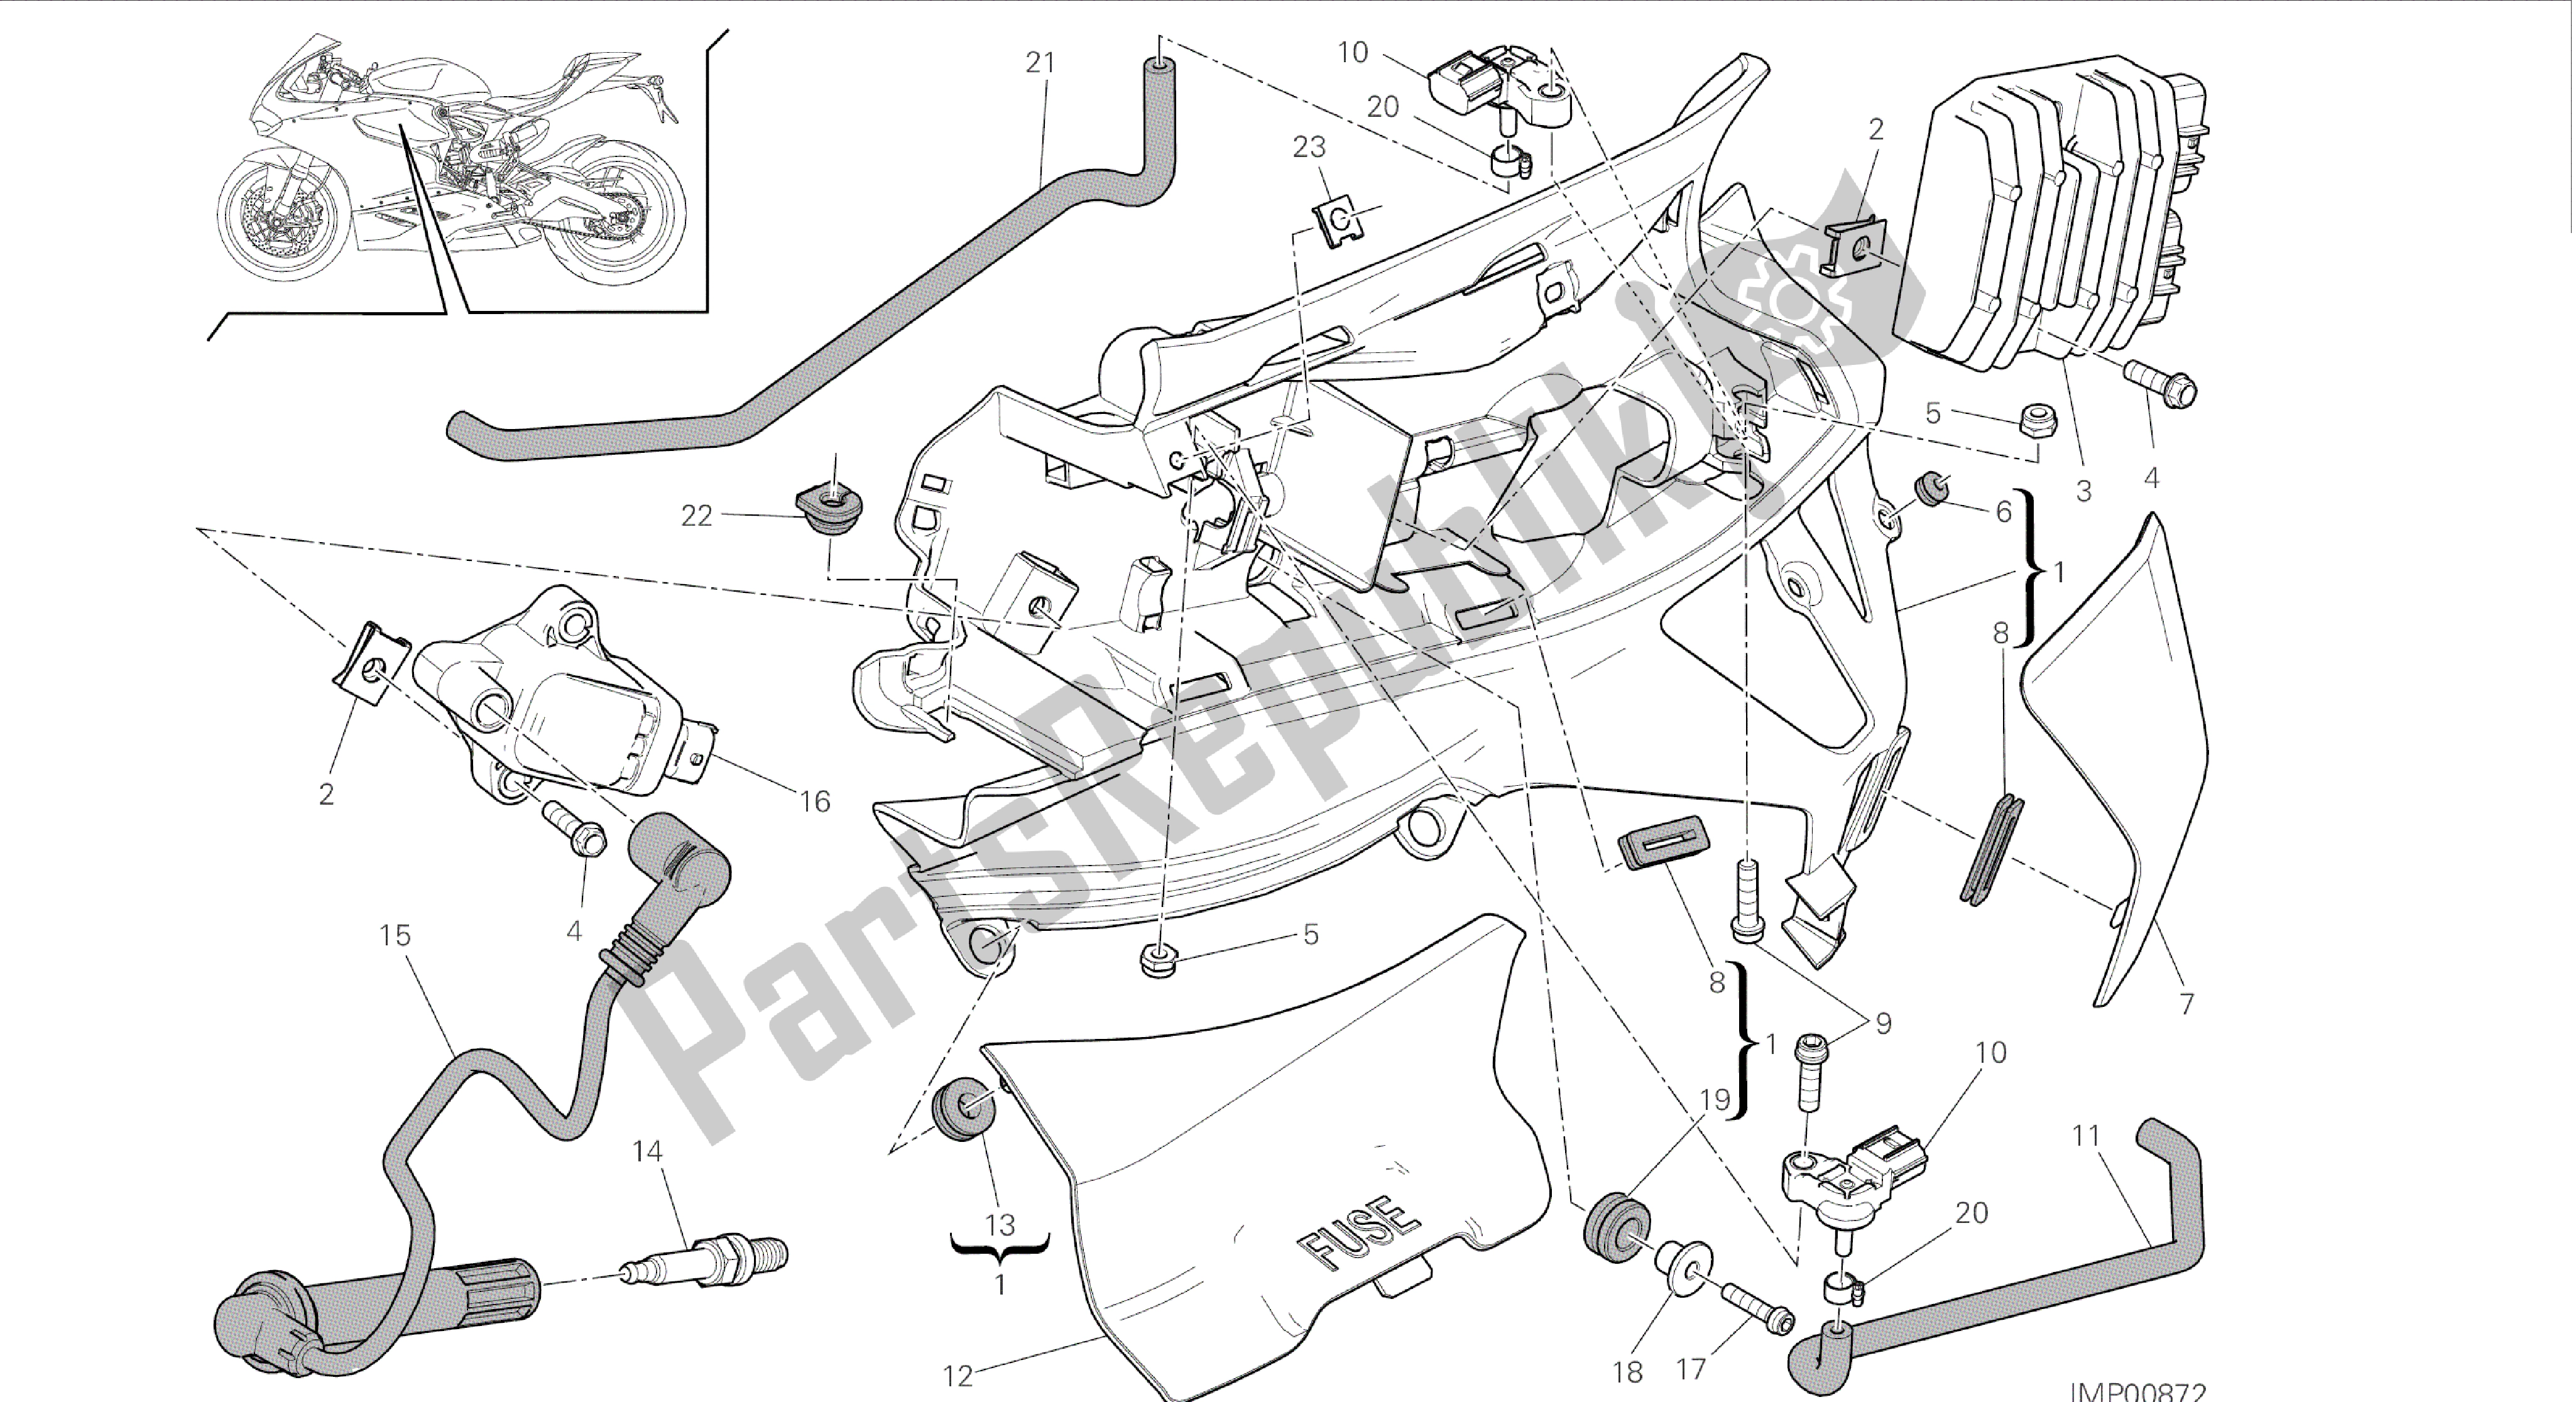 Todas las partes para Dibujo 018 - Impianto Elettrico Sinistro [mod: 899 Abs, 899 Aws] Grupo Eléctrico de Ducati Panigale 899 2015